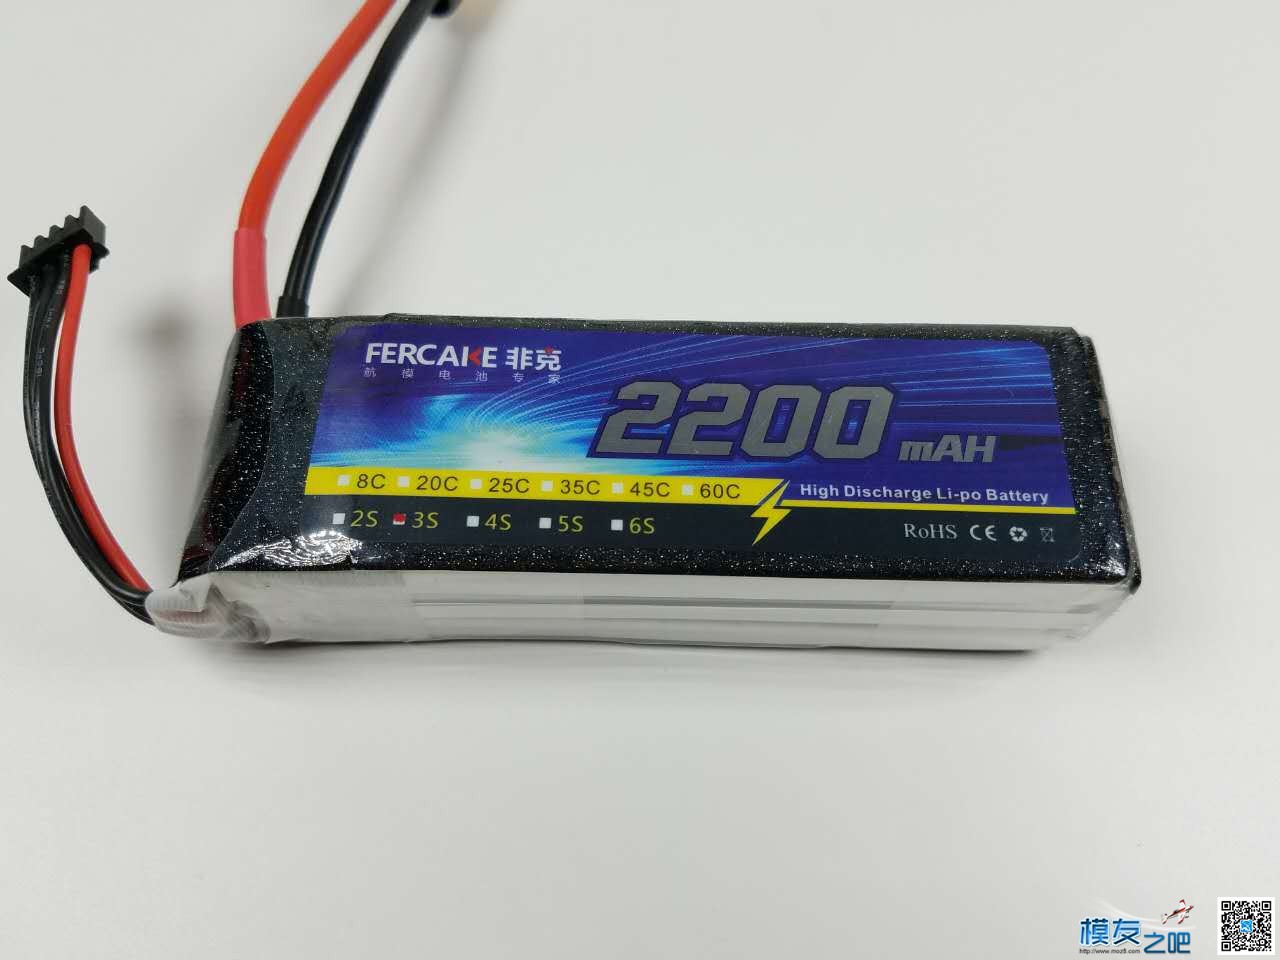 非克电池测试体验活动 电池,非克汽车02,taobao 作者:飞天狼 5521 